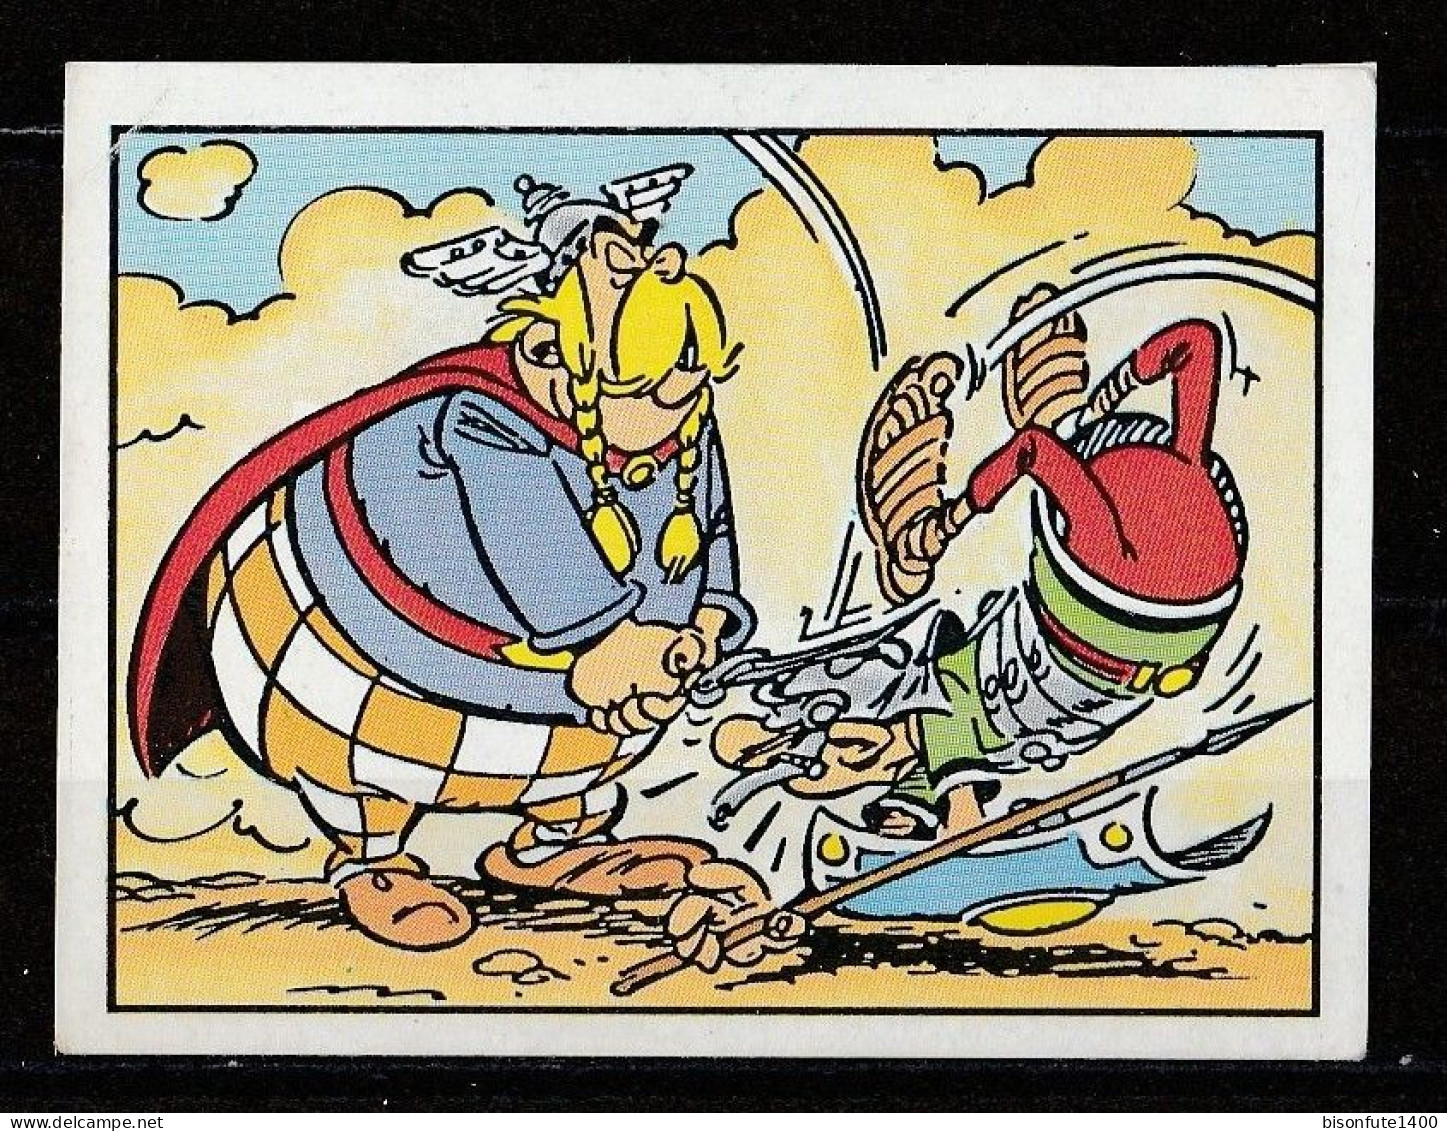 ASTERIX : Occasion : Vignette Autocollante N° 57 De L'album PANINI "Astérix" De 1987. ( Voir Description ) - Edition Française